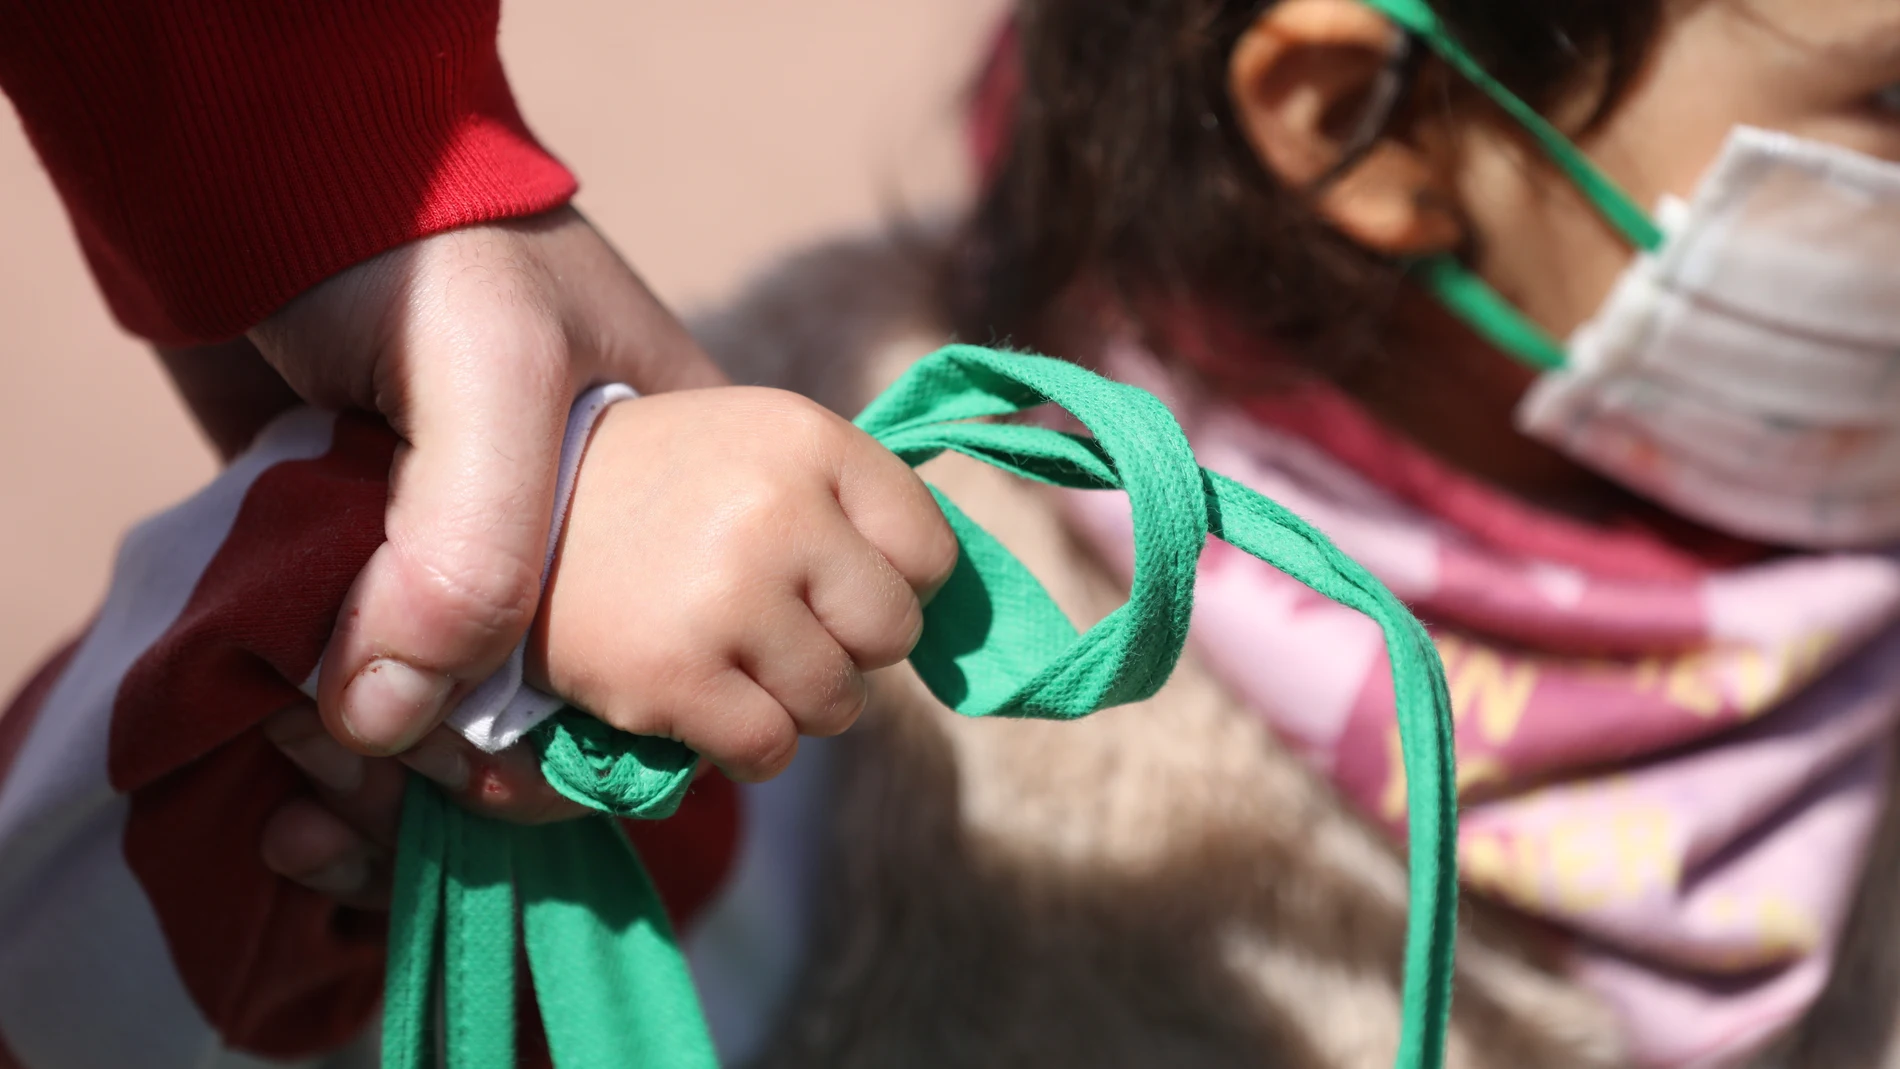 Payasos de Circos Reunidos entregan a niños material sanitario